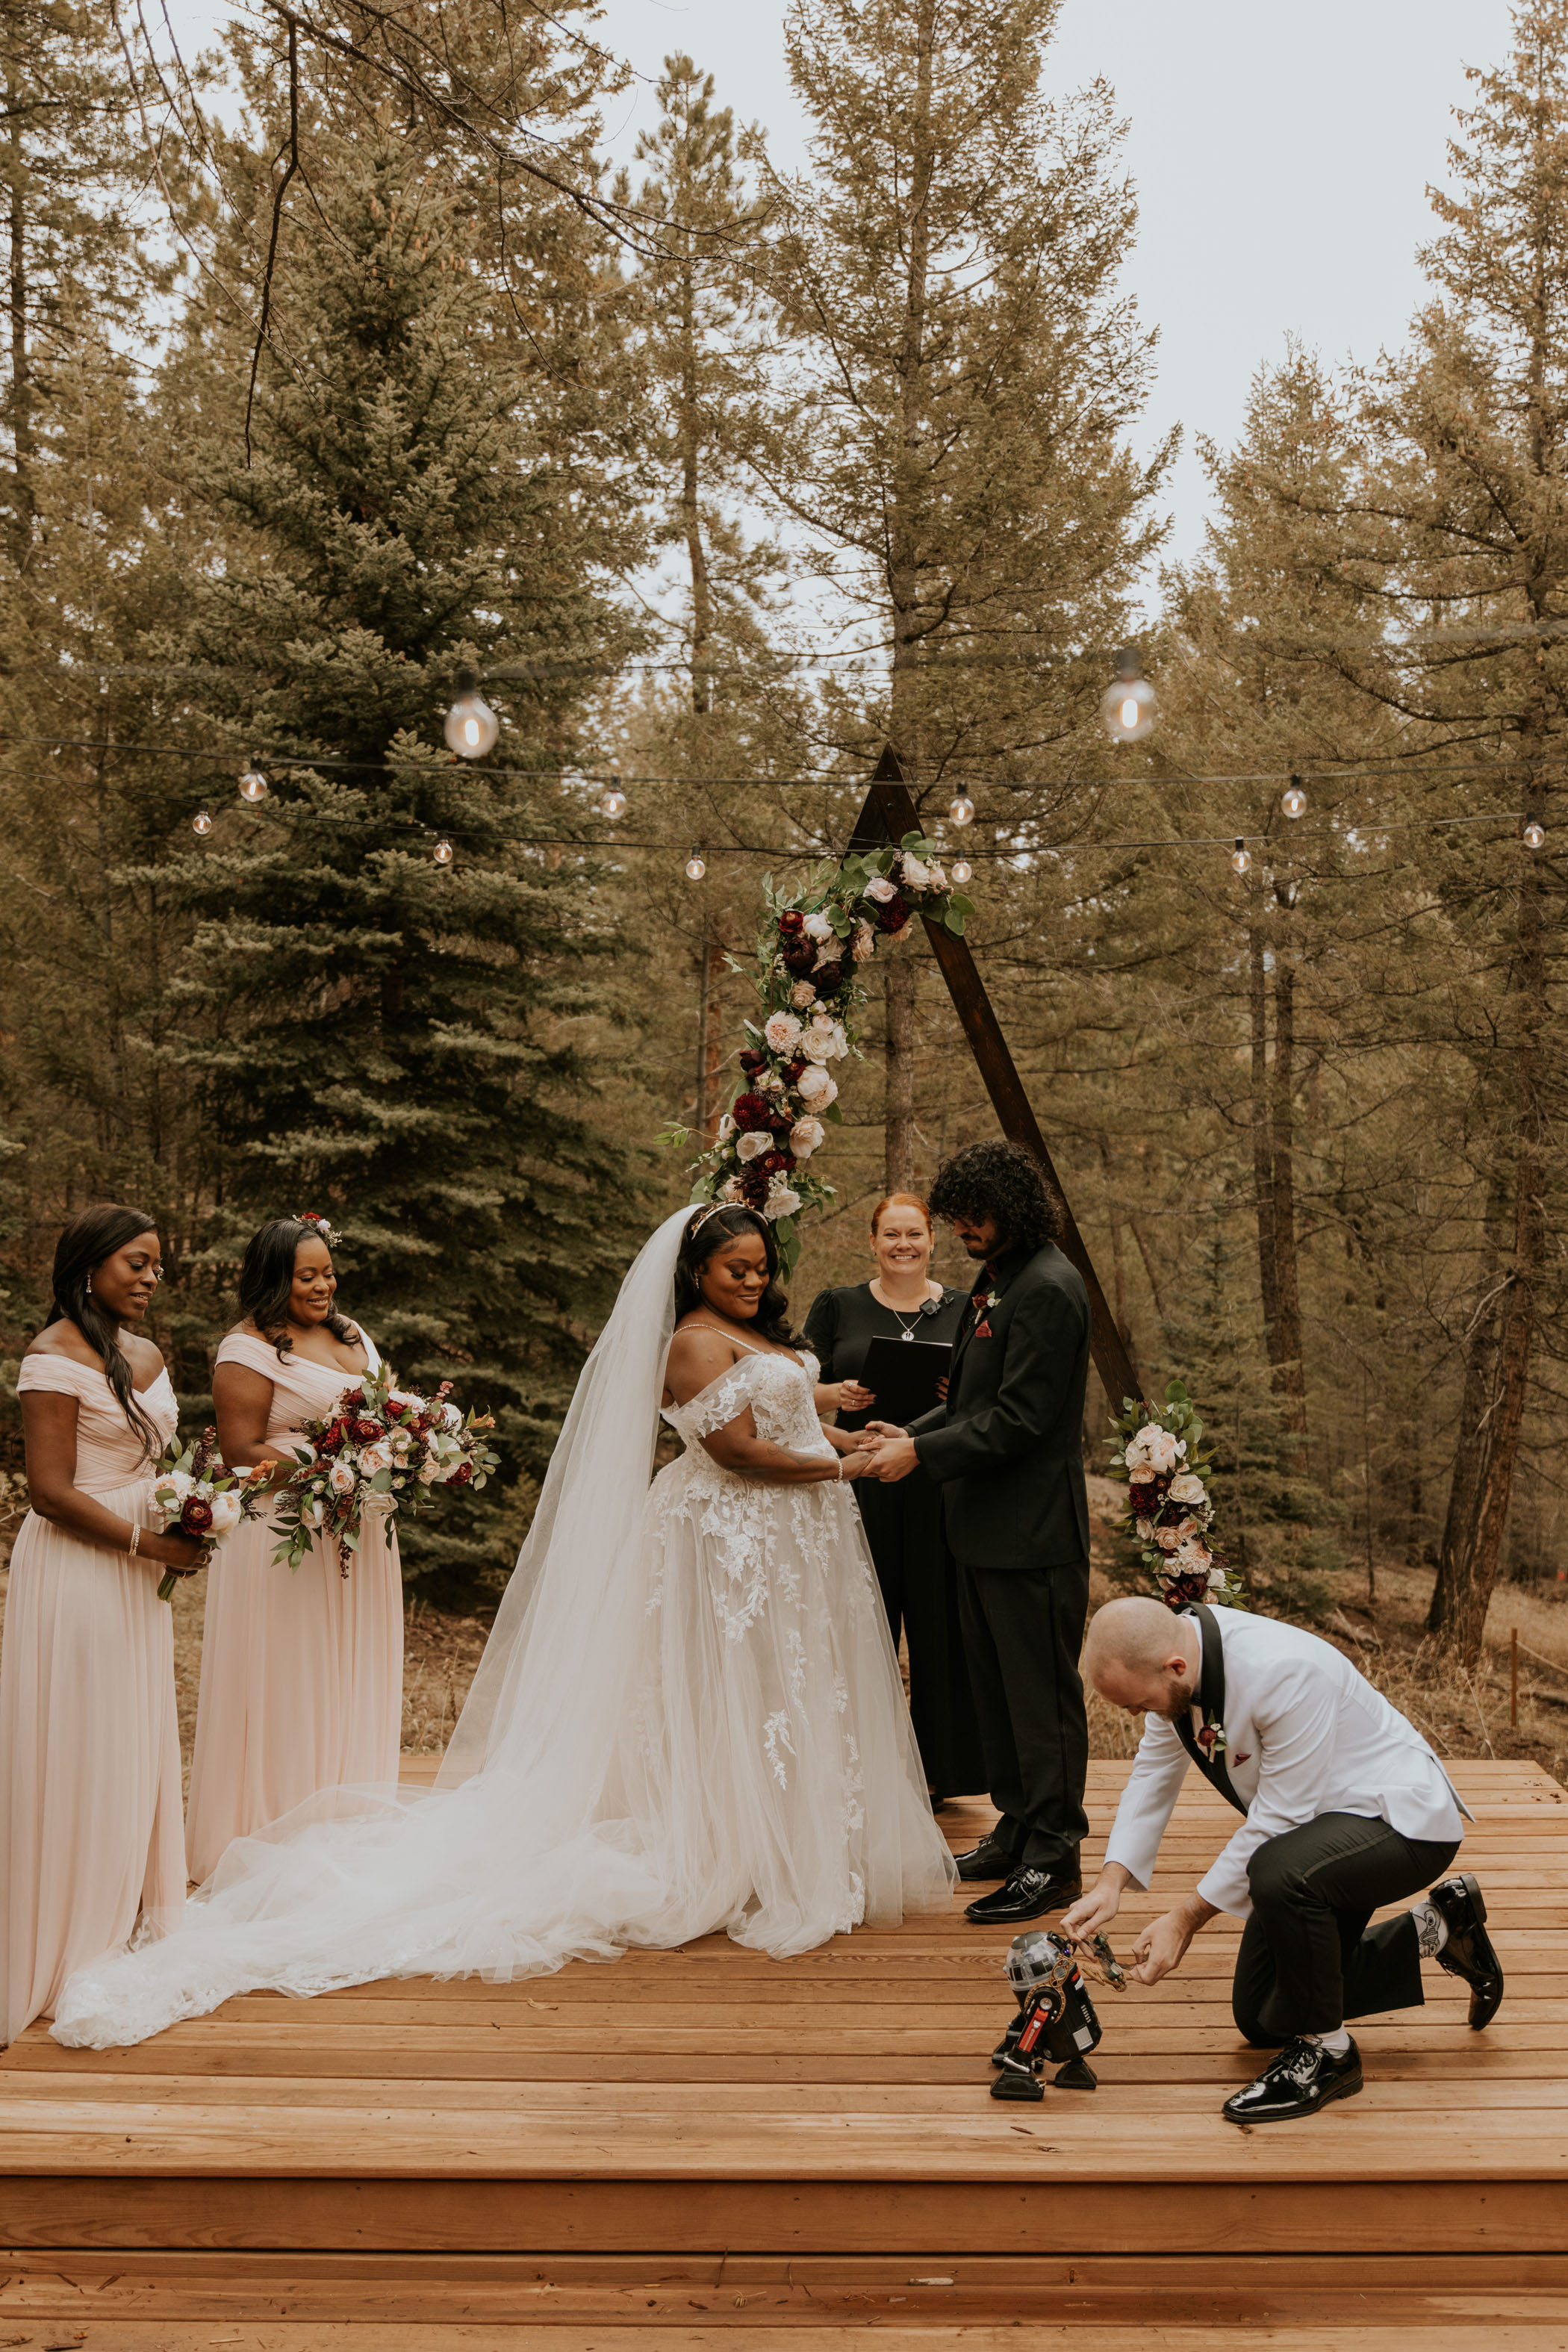 Romantic Star Wars Wedding in Evergreen Colorado Ceremony